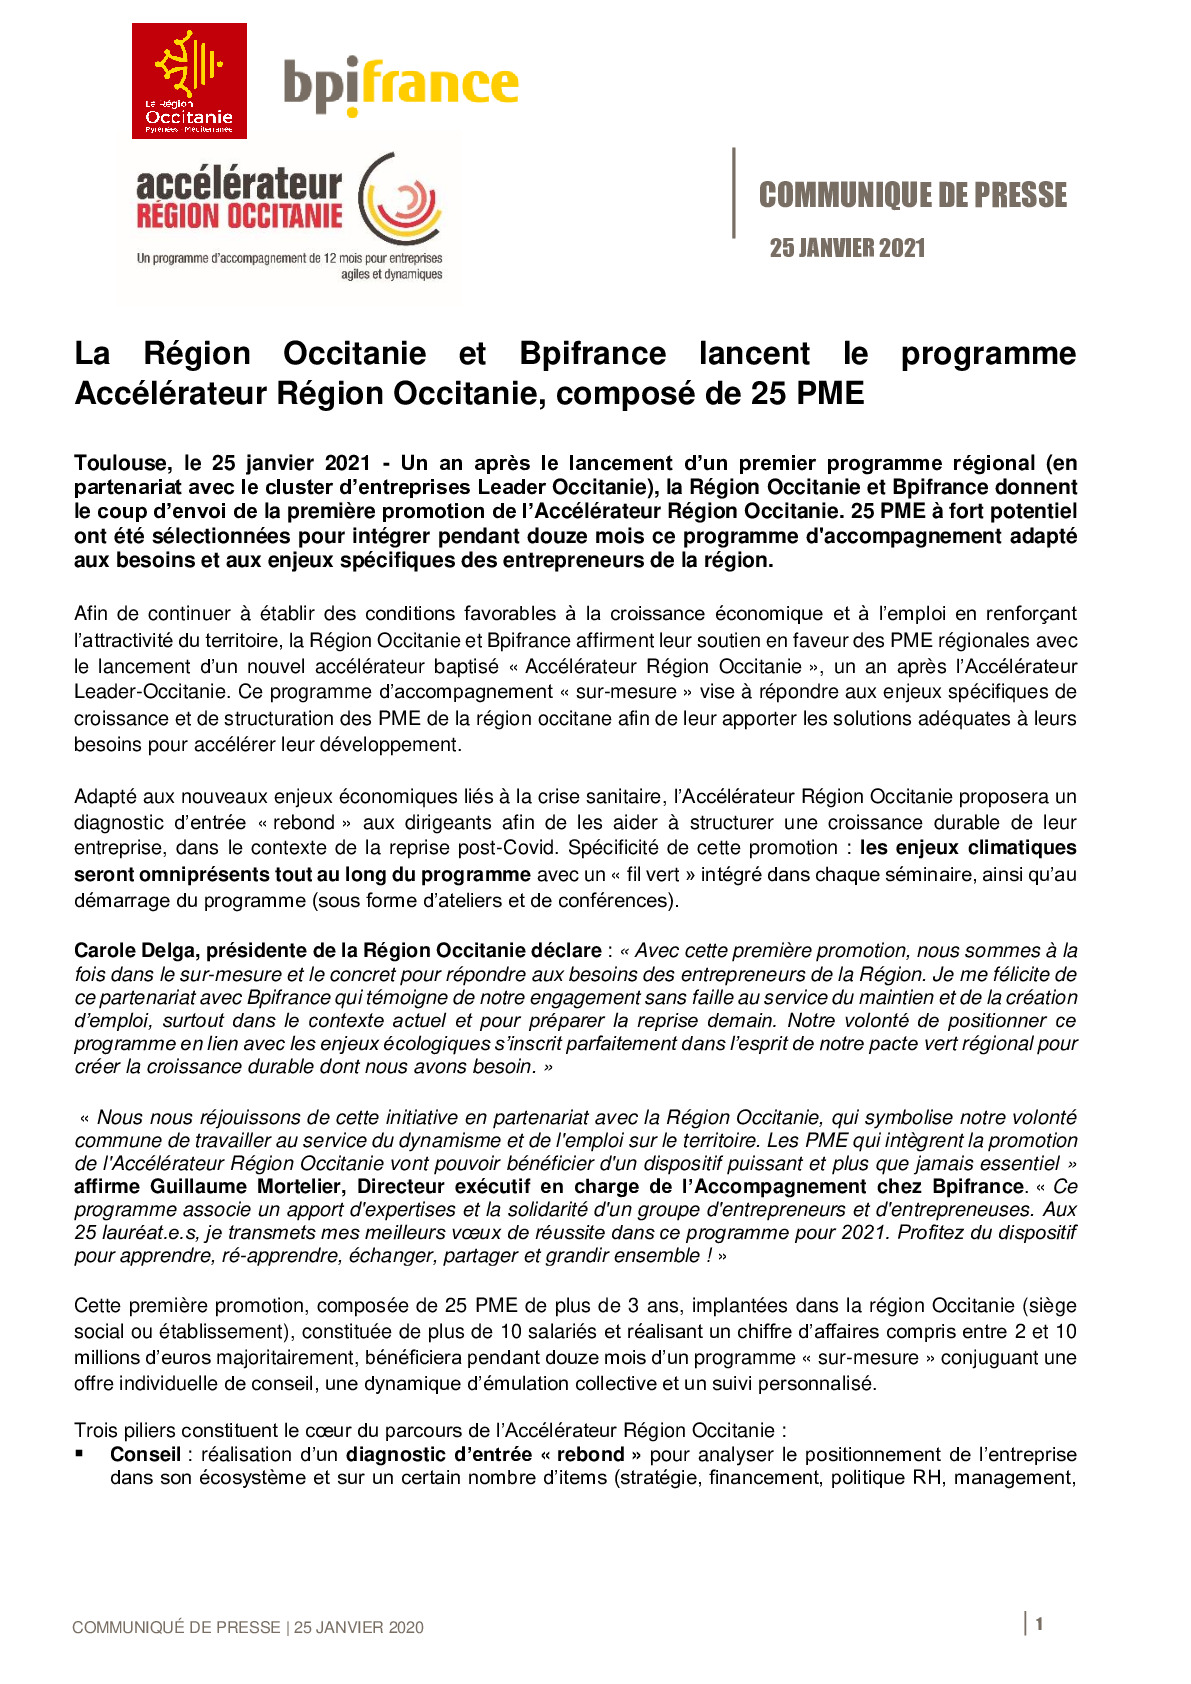 2021 01 25 – CP – La Region Occitanie et Bpifrance lancent le programme Accelerateur Region Occitanie compose de 25 PME-pdf